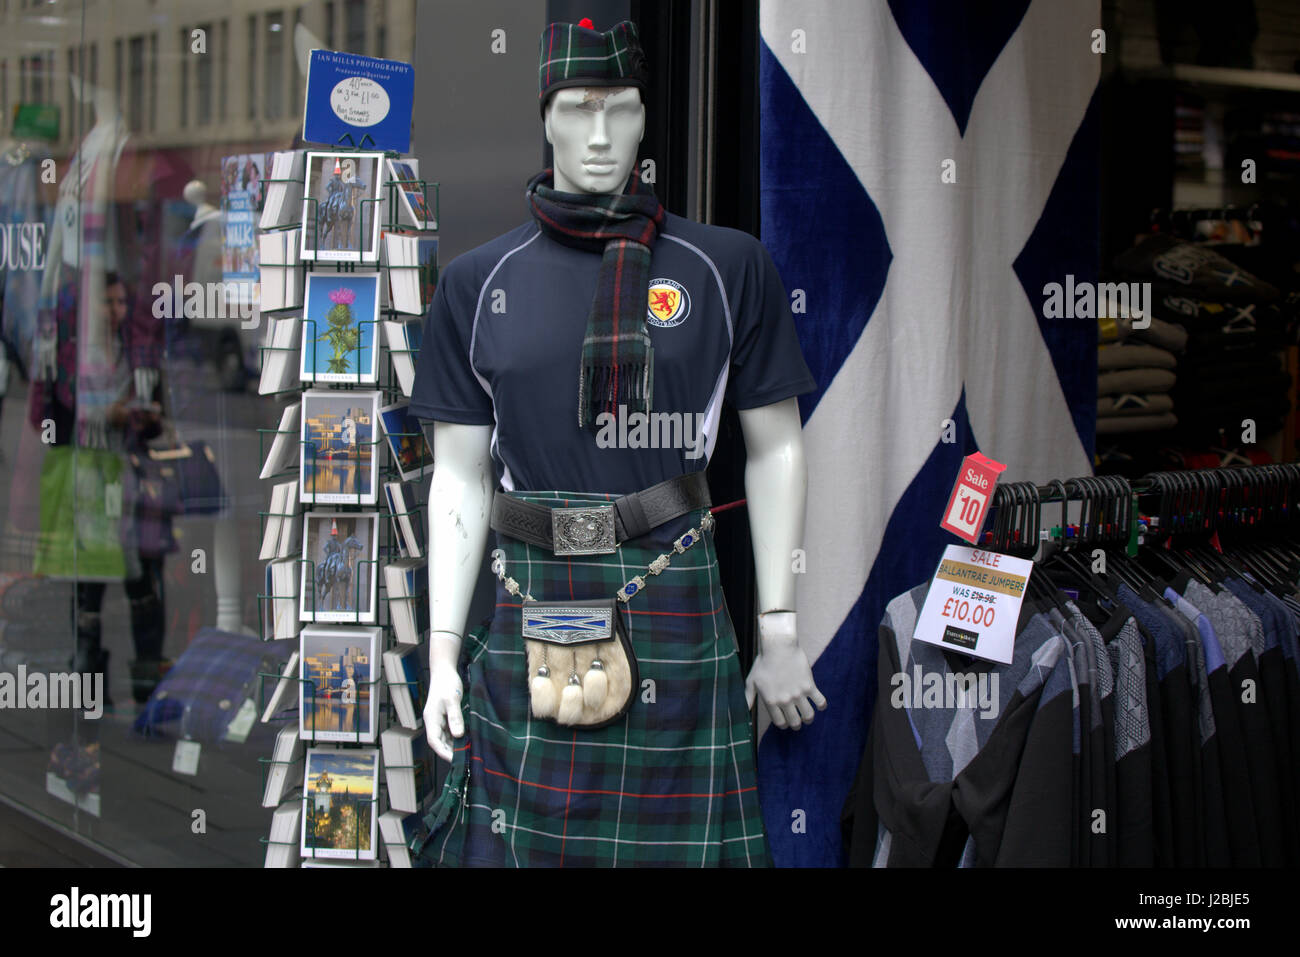 Drapeau Ecosse rugby shirt kilt kitsch 6 rangement unies shirt flag cartes postales shop window Banque D'Images